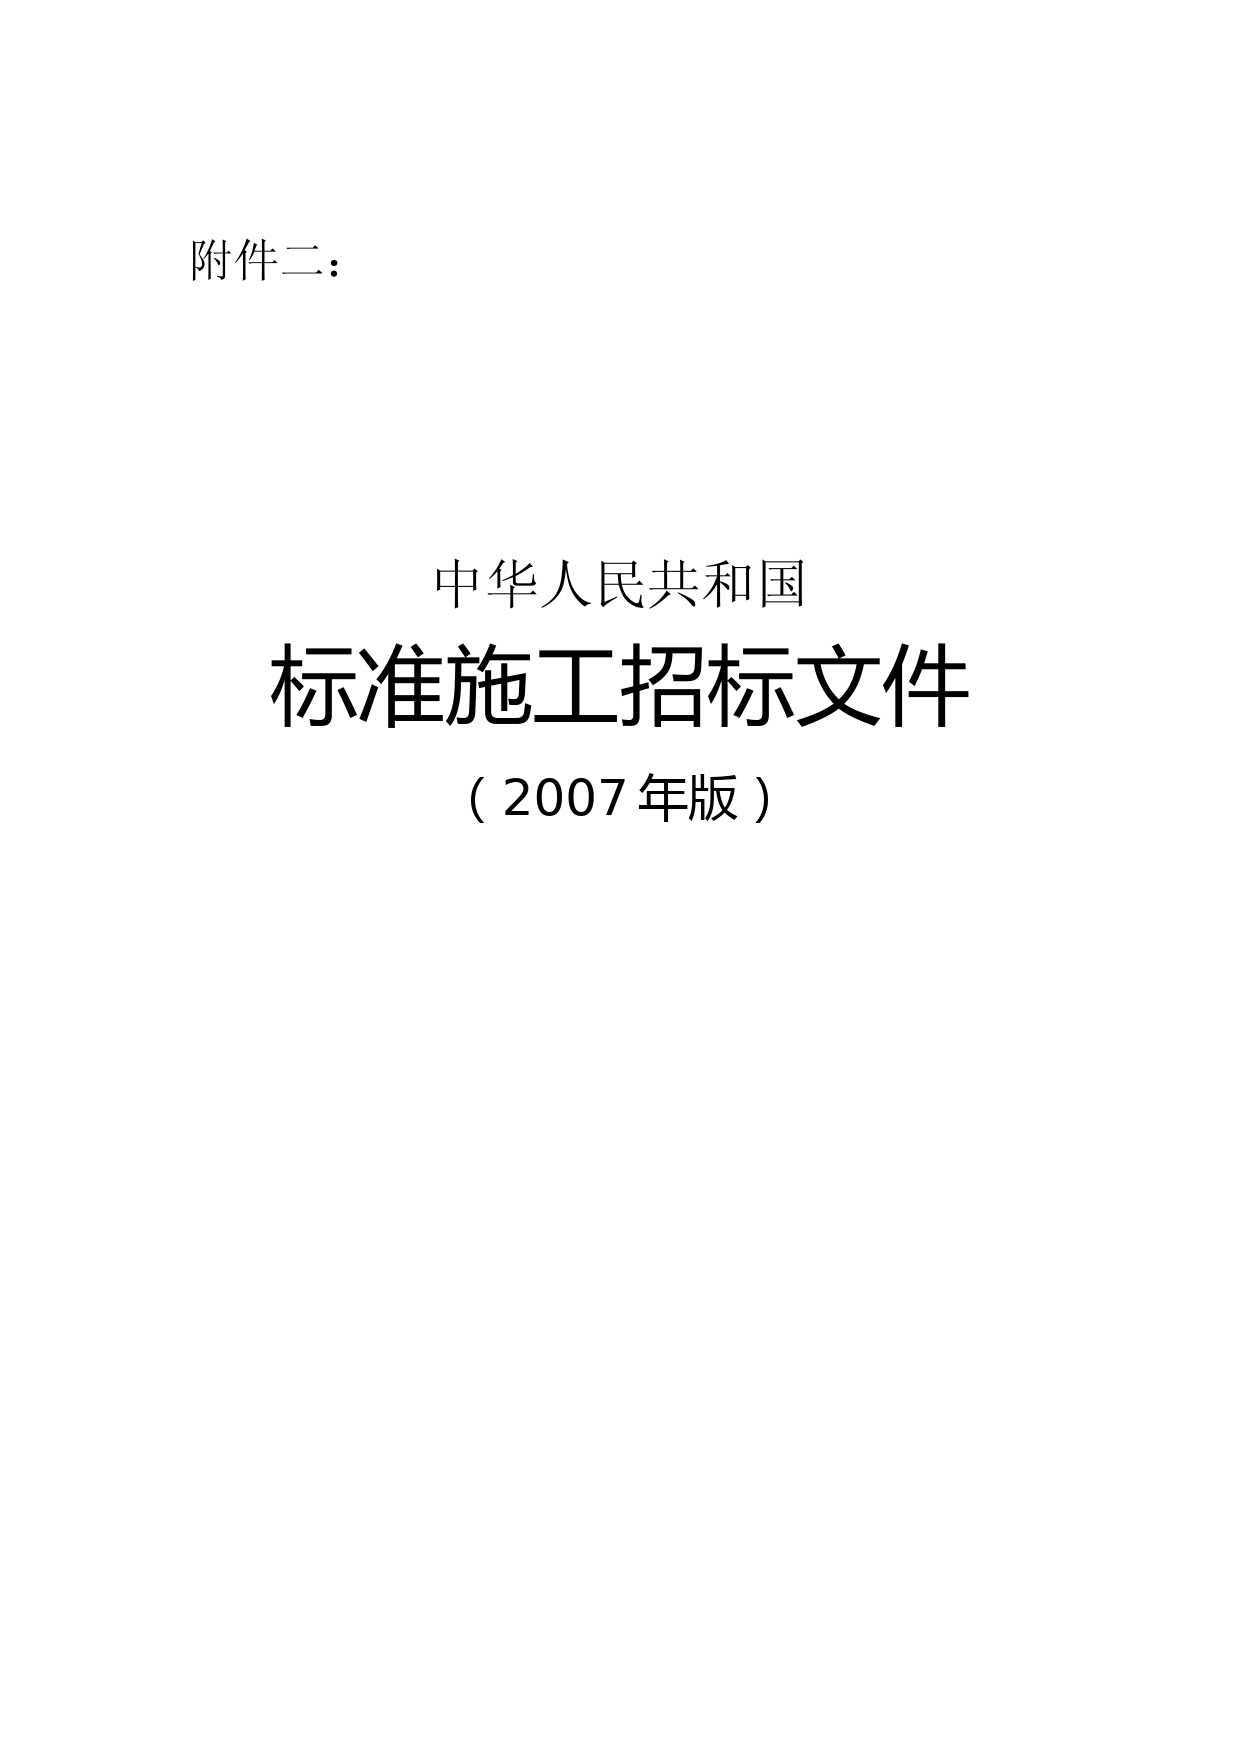 中华人民共和国标准施工招标文件(2007)版